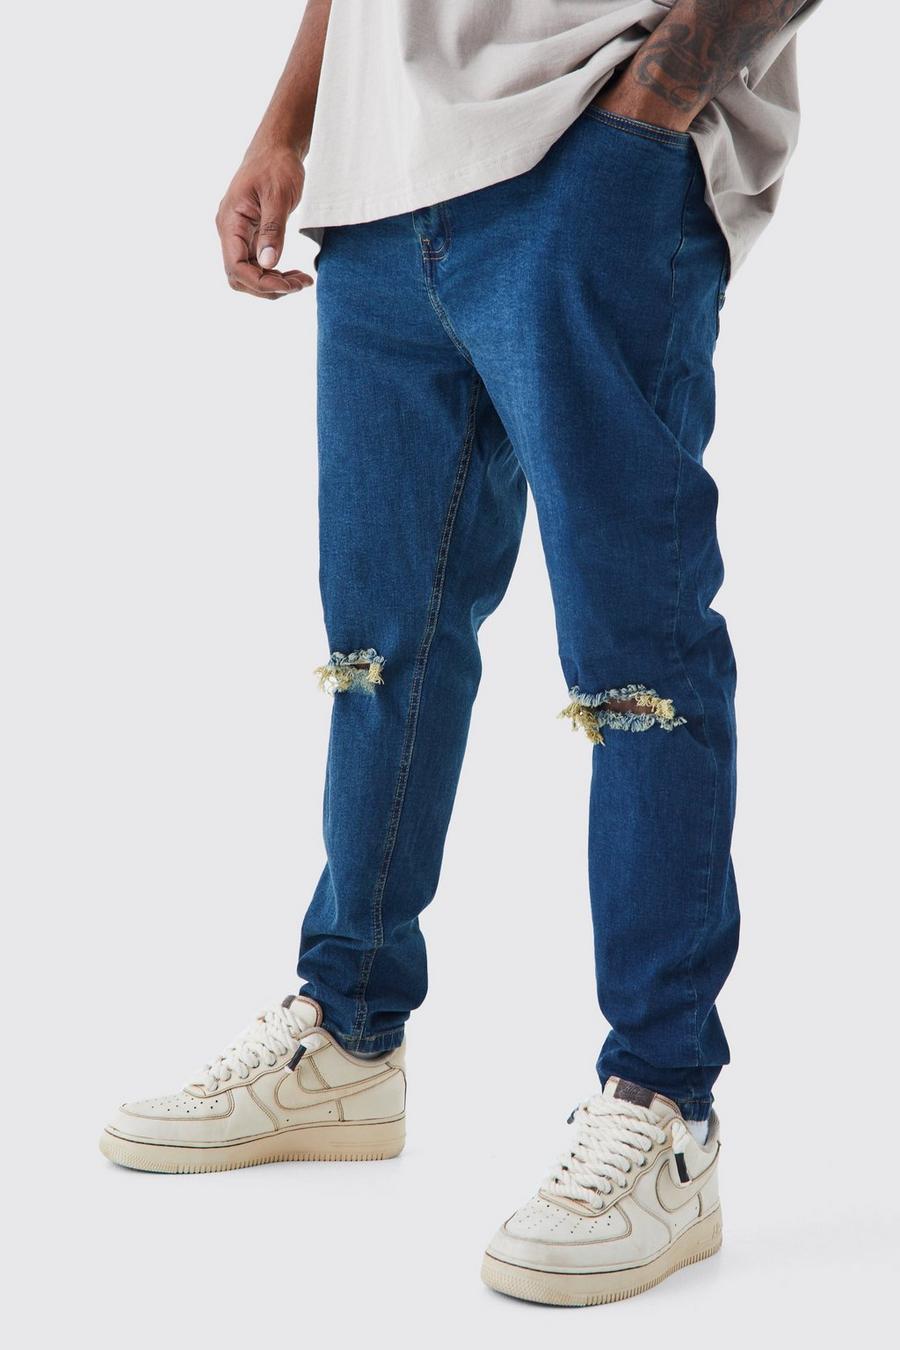 Jeans Plus Size Super Skinny Fit Stretch con strappi sul ginocchio, Antique blue